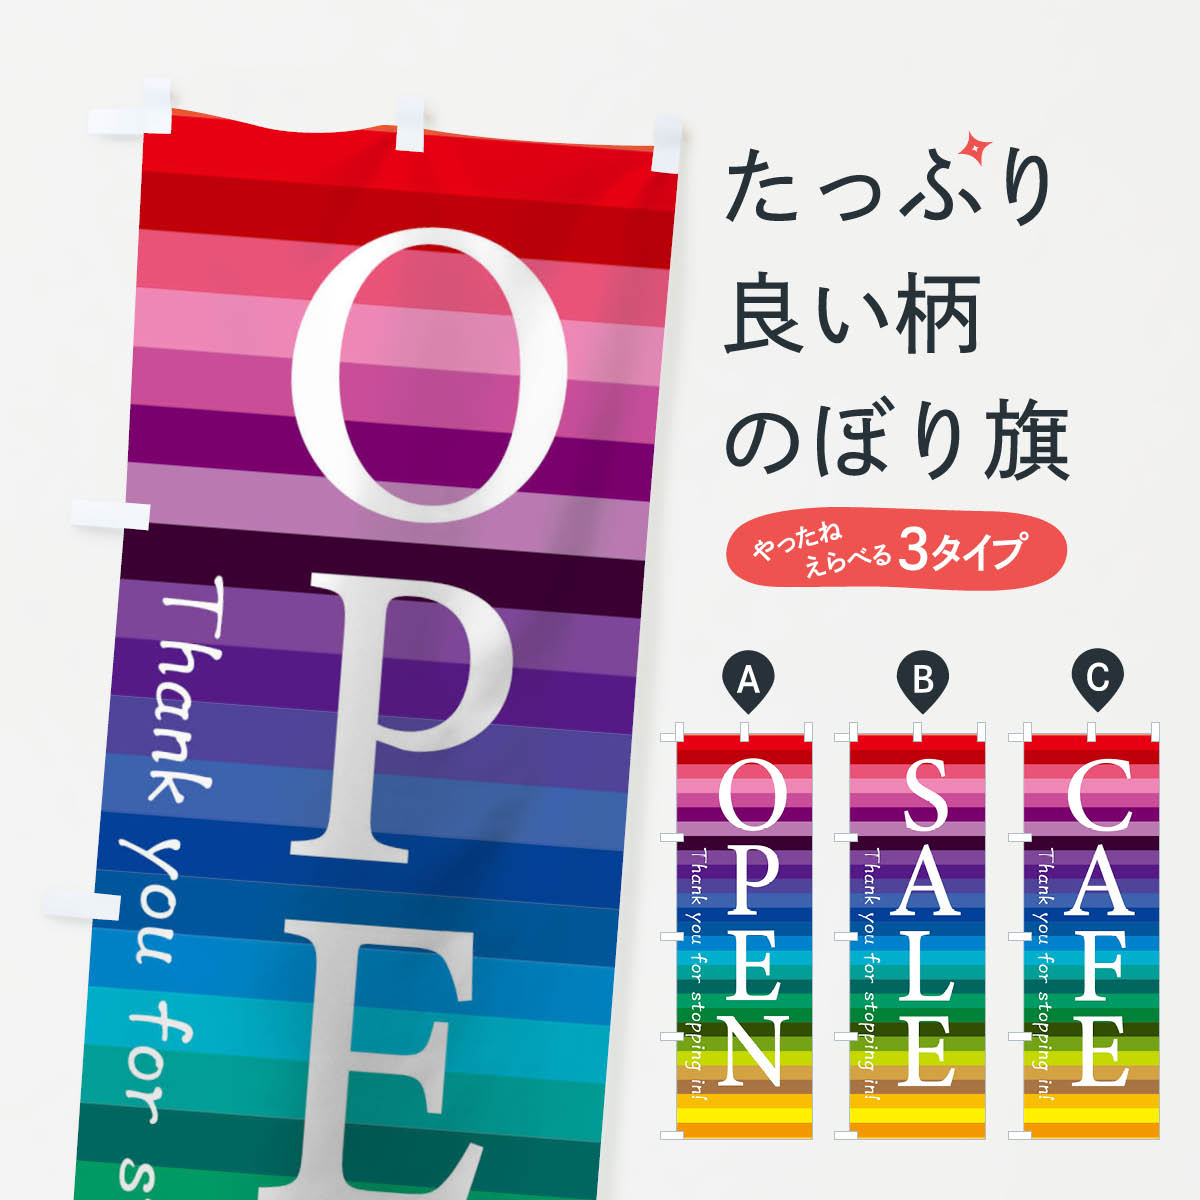 【ネコポス送料360】 のぼり旗 オープンのぼり TCF7 OPEN セール SALE カフェ グッズプロ